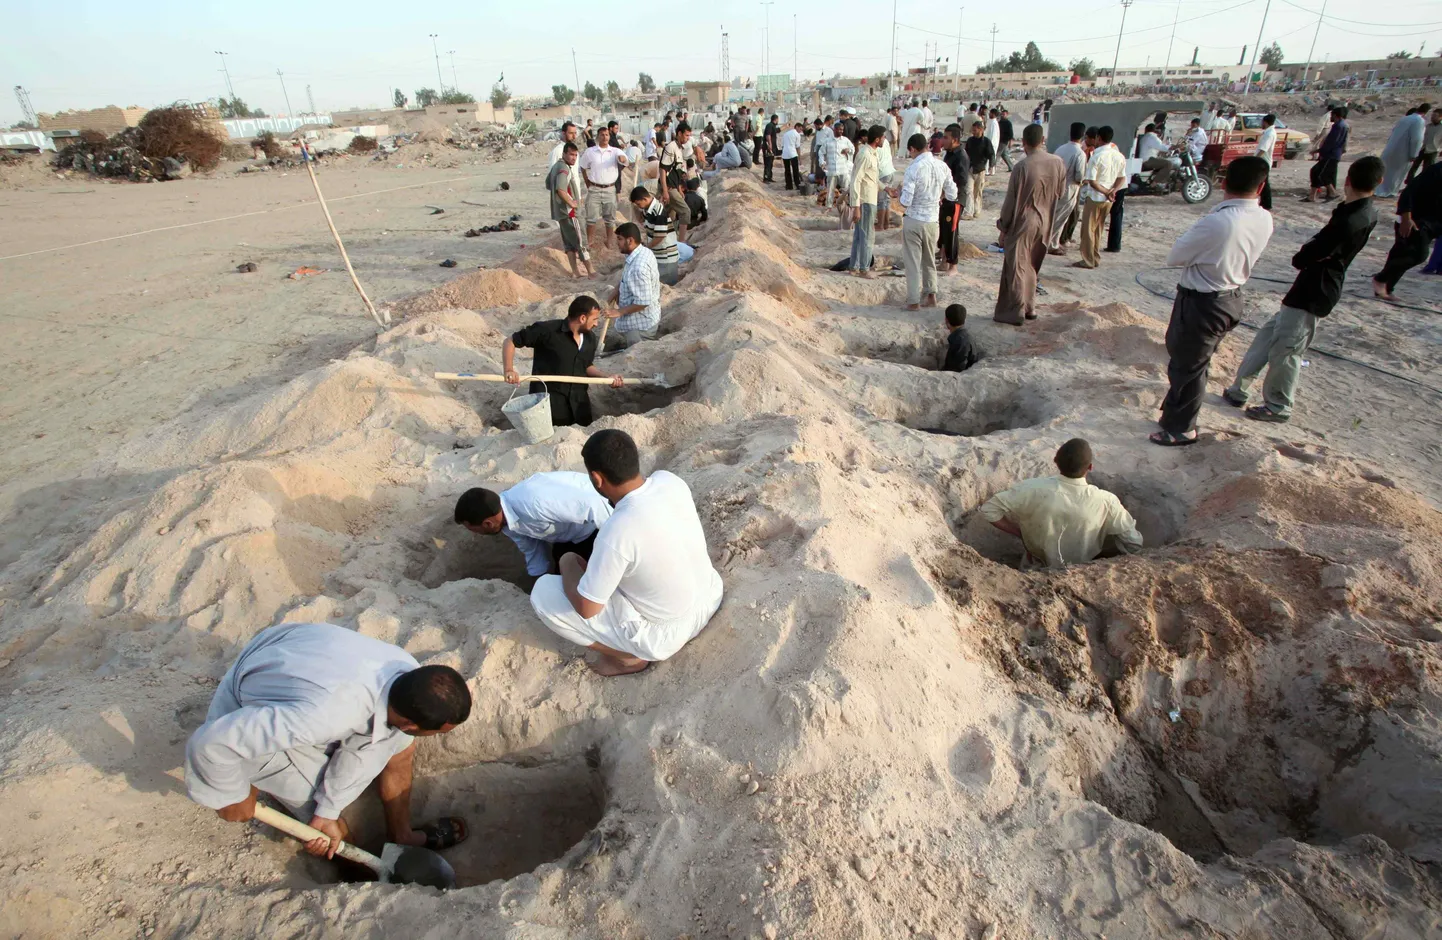 Iraaklased haudu kaevamas. Iraagi sõjas hukkus vähemalt 15 000 tsiviilisikut rohkem, kui algselt arvati.